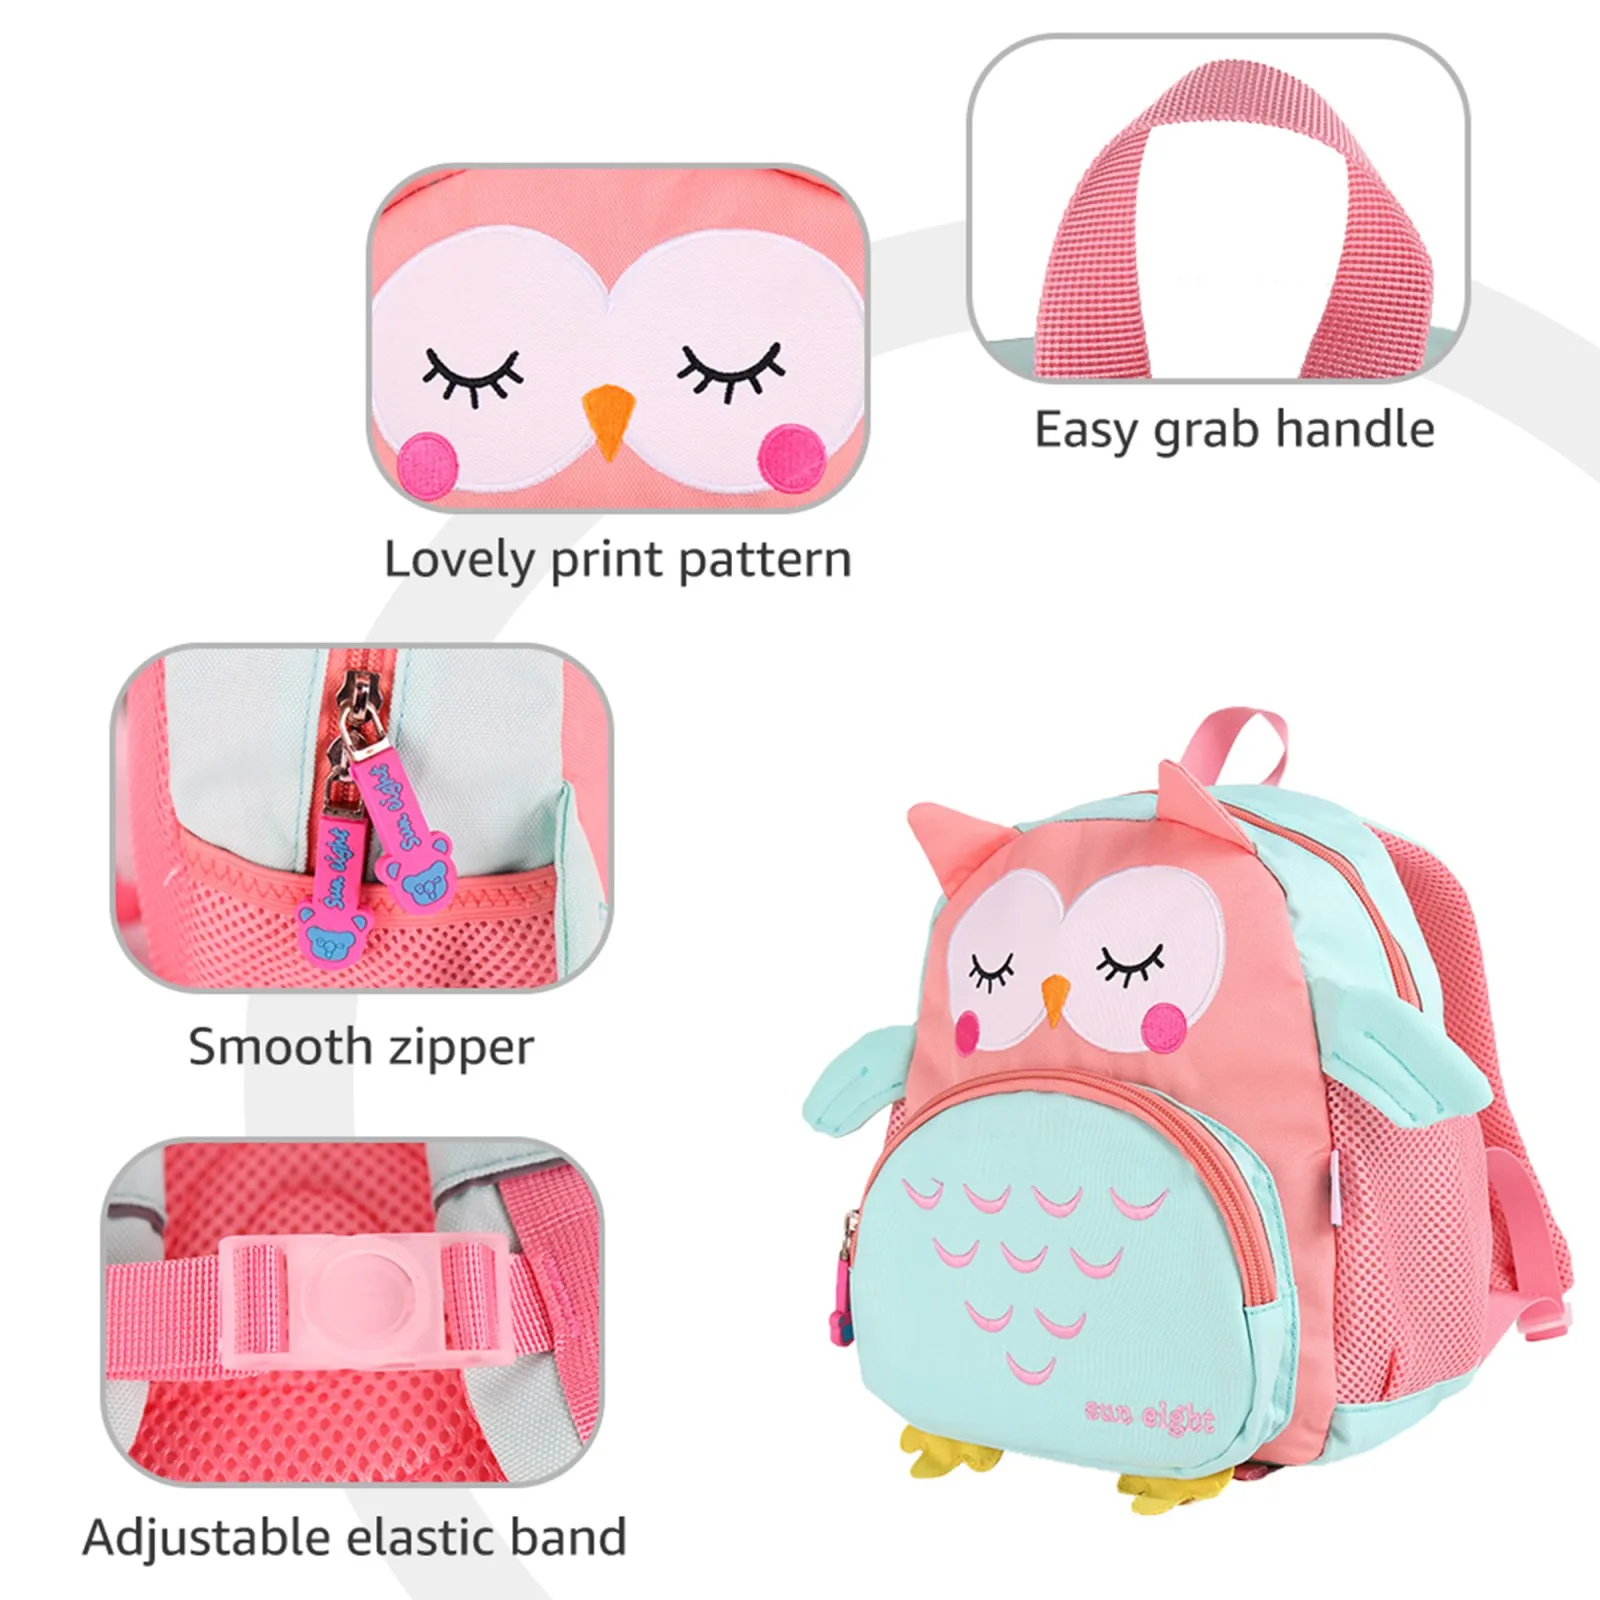 Водонепроницаемый рюкзак для дошкольного возраста, рюкзак с милыми мультяшными животными, детская школьная сумка, рюкзак для детского сада